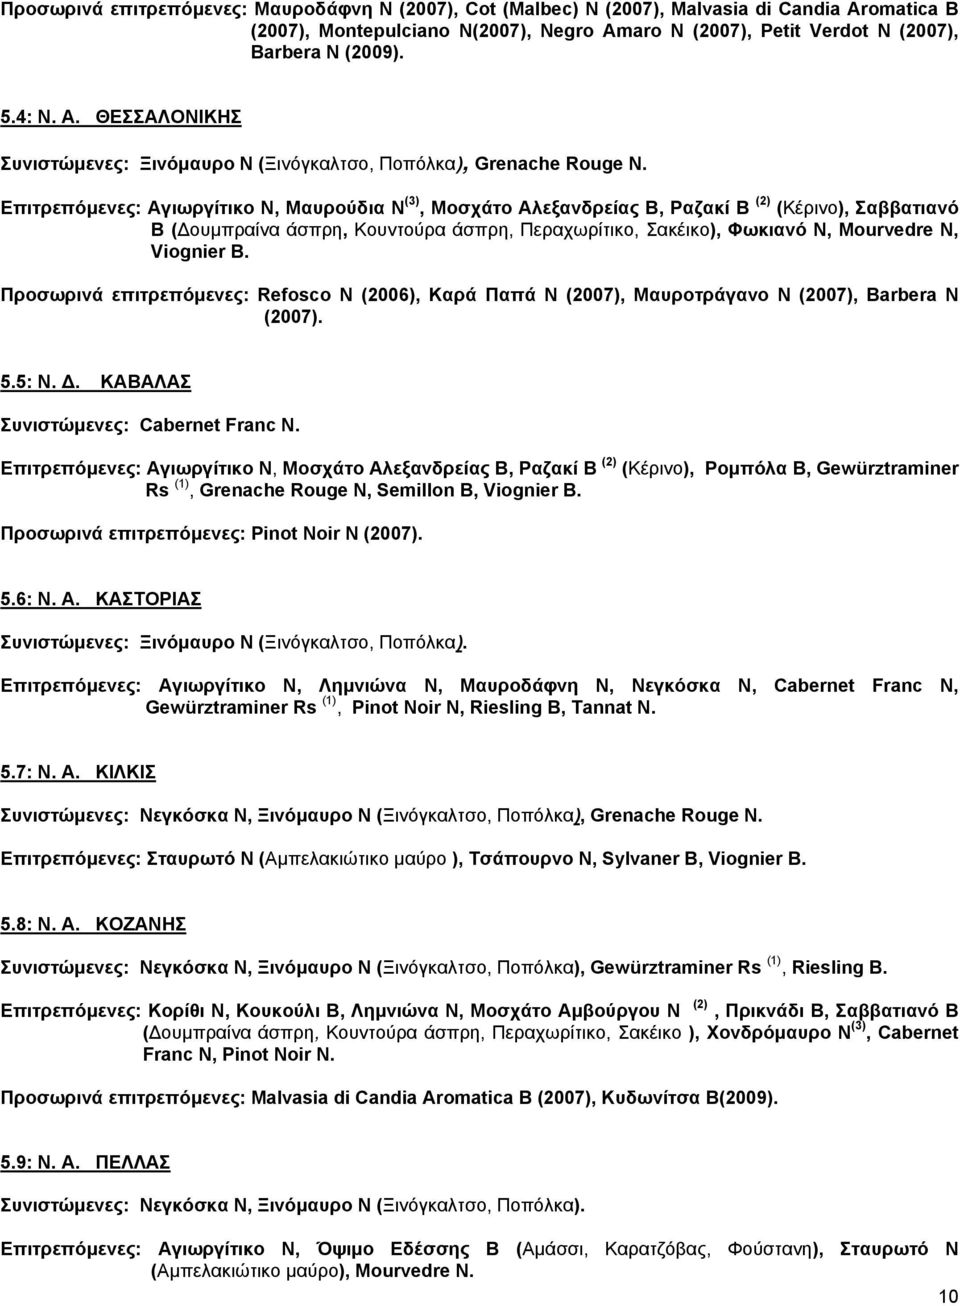 Επιτρεπόμενες: Αγιωργίτικο Ν, Μαυρούδια Ν (3), Μοσχάτο Αλεξανδρείας Β, Ραζακί Β (2) (Κέρινο), Σαββατιανό Β (Δουμπραίνα άσπρη, Κουντούρα άσπρη, Περαχωρίτικο, Σακέικο), Φωκιανό Ν, Mourvedre N, Viognier